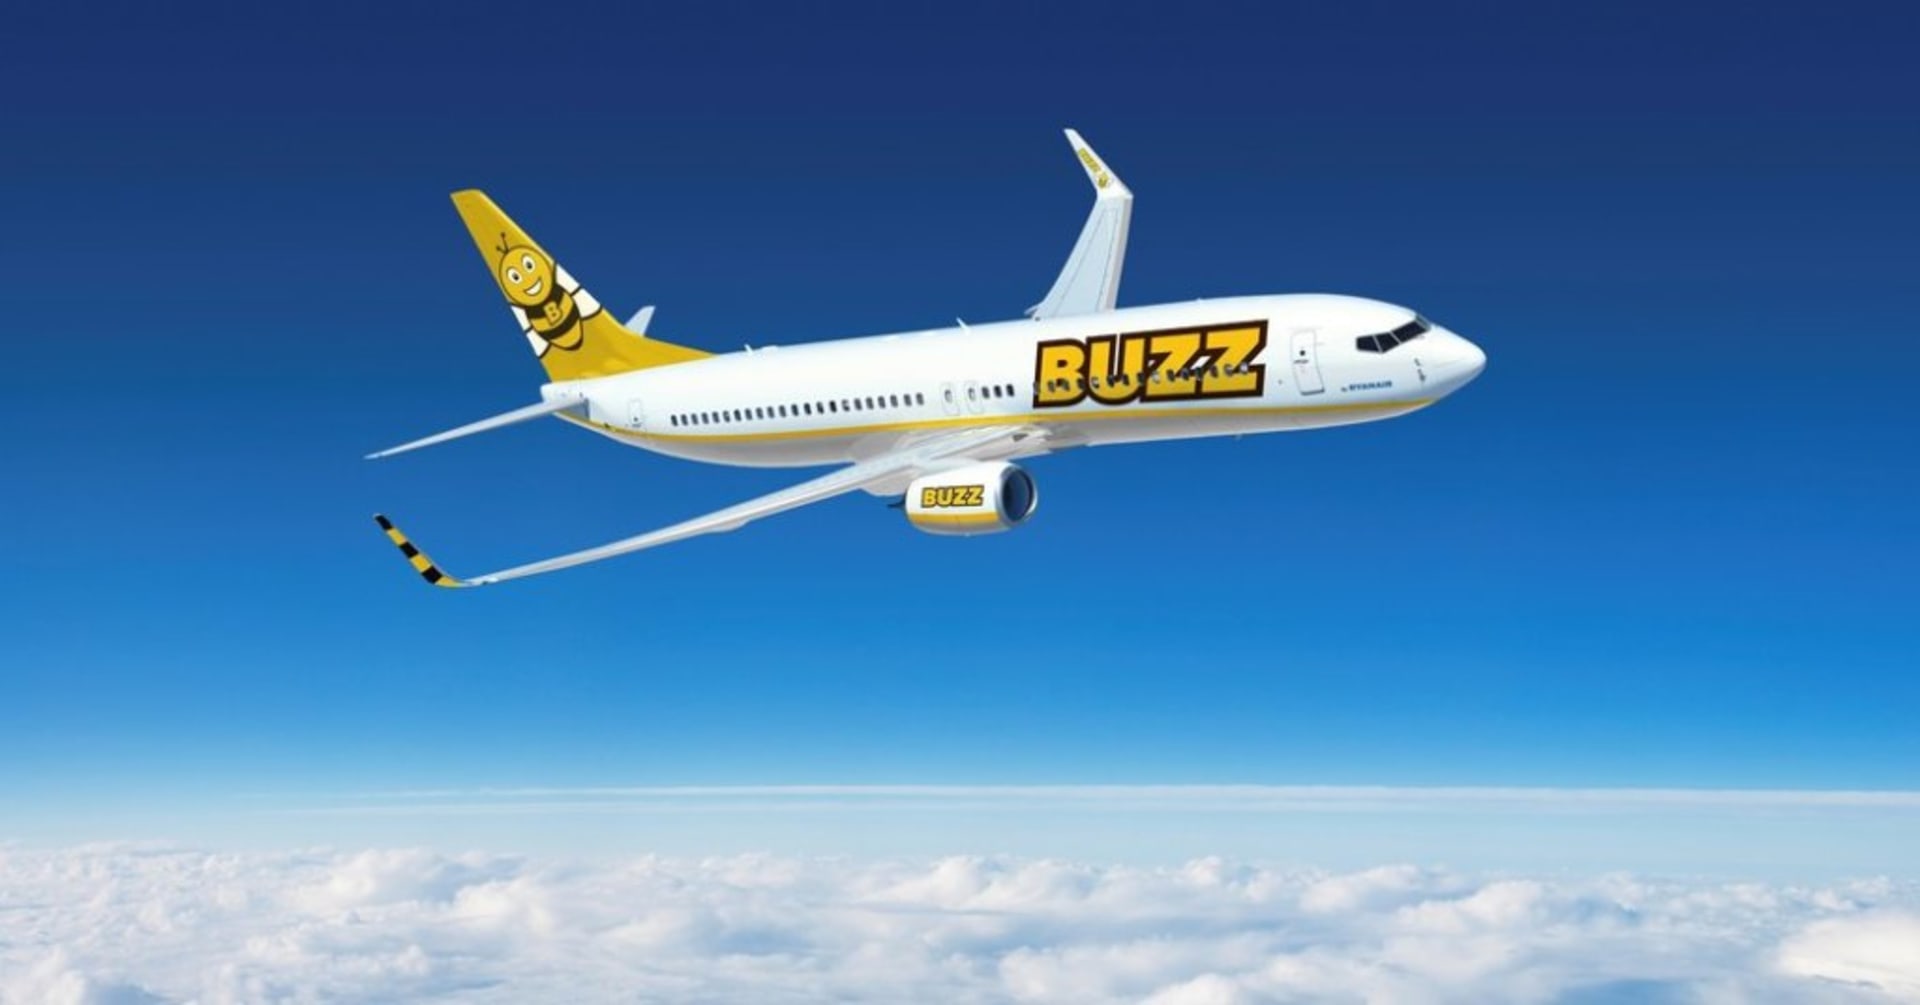 Buzz je polskou leteckou společností, která patří do skupiny Ryanair a její letadla by mohla nahradit v charterové přepravě domácí Smartwings